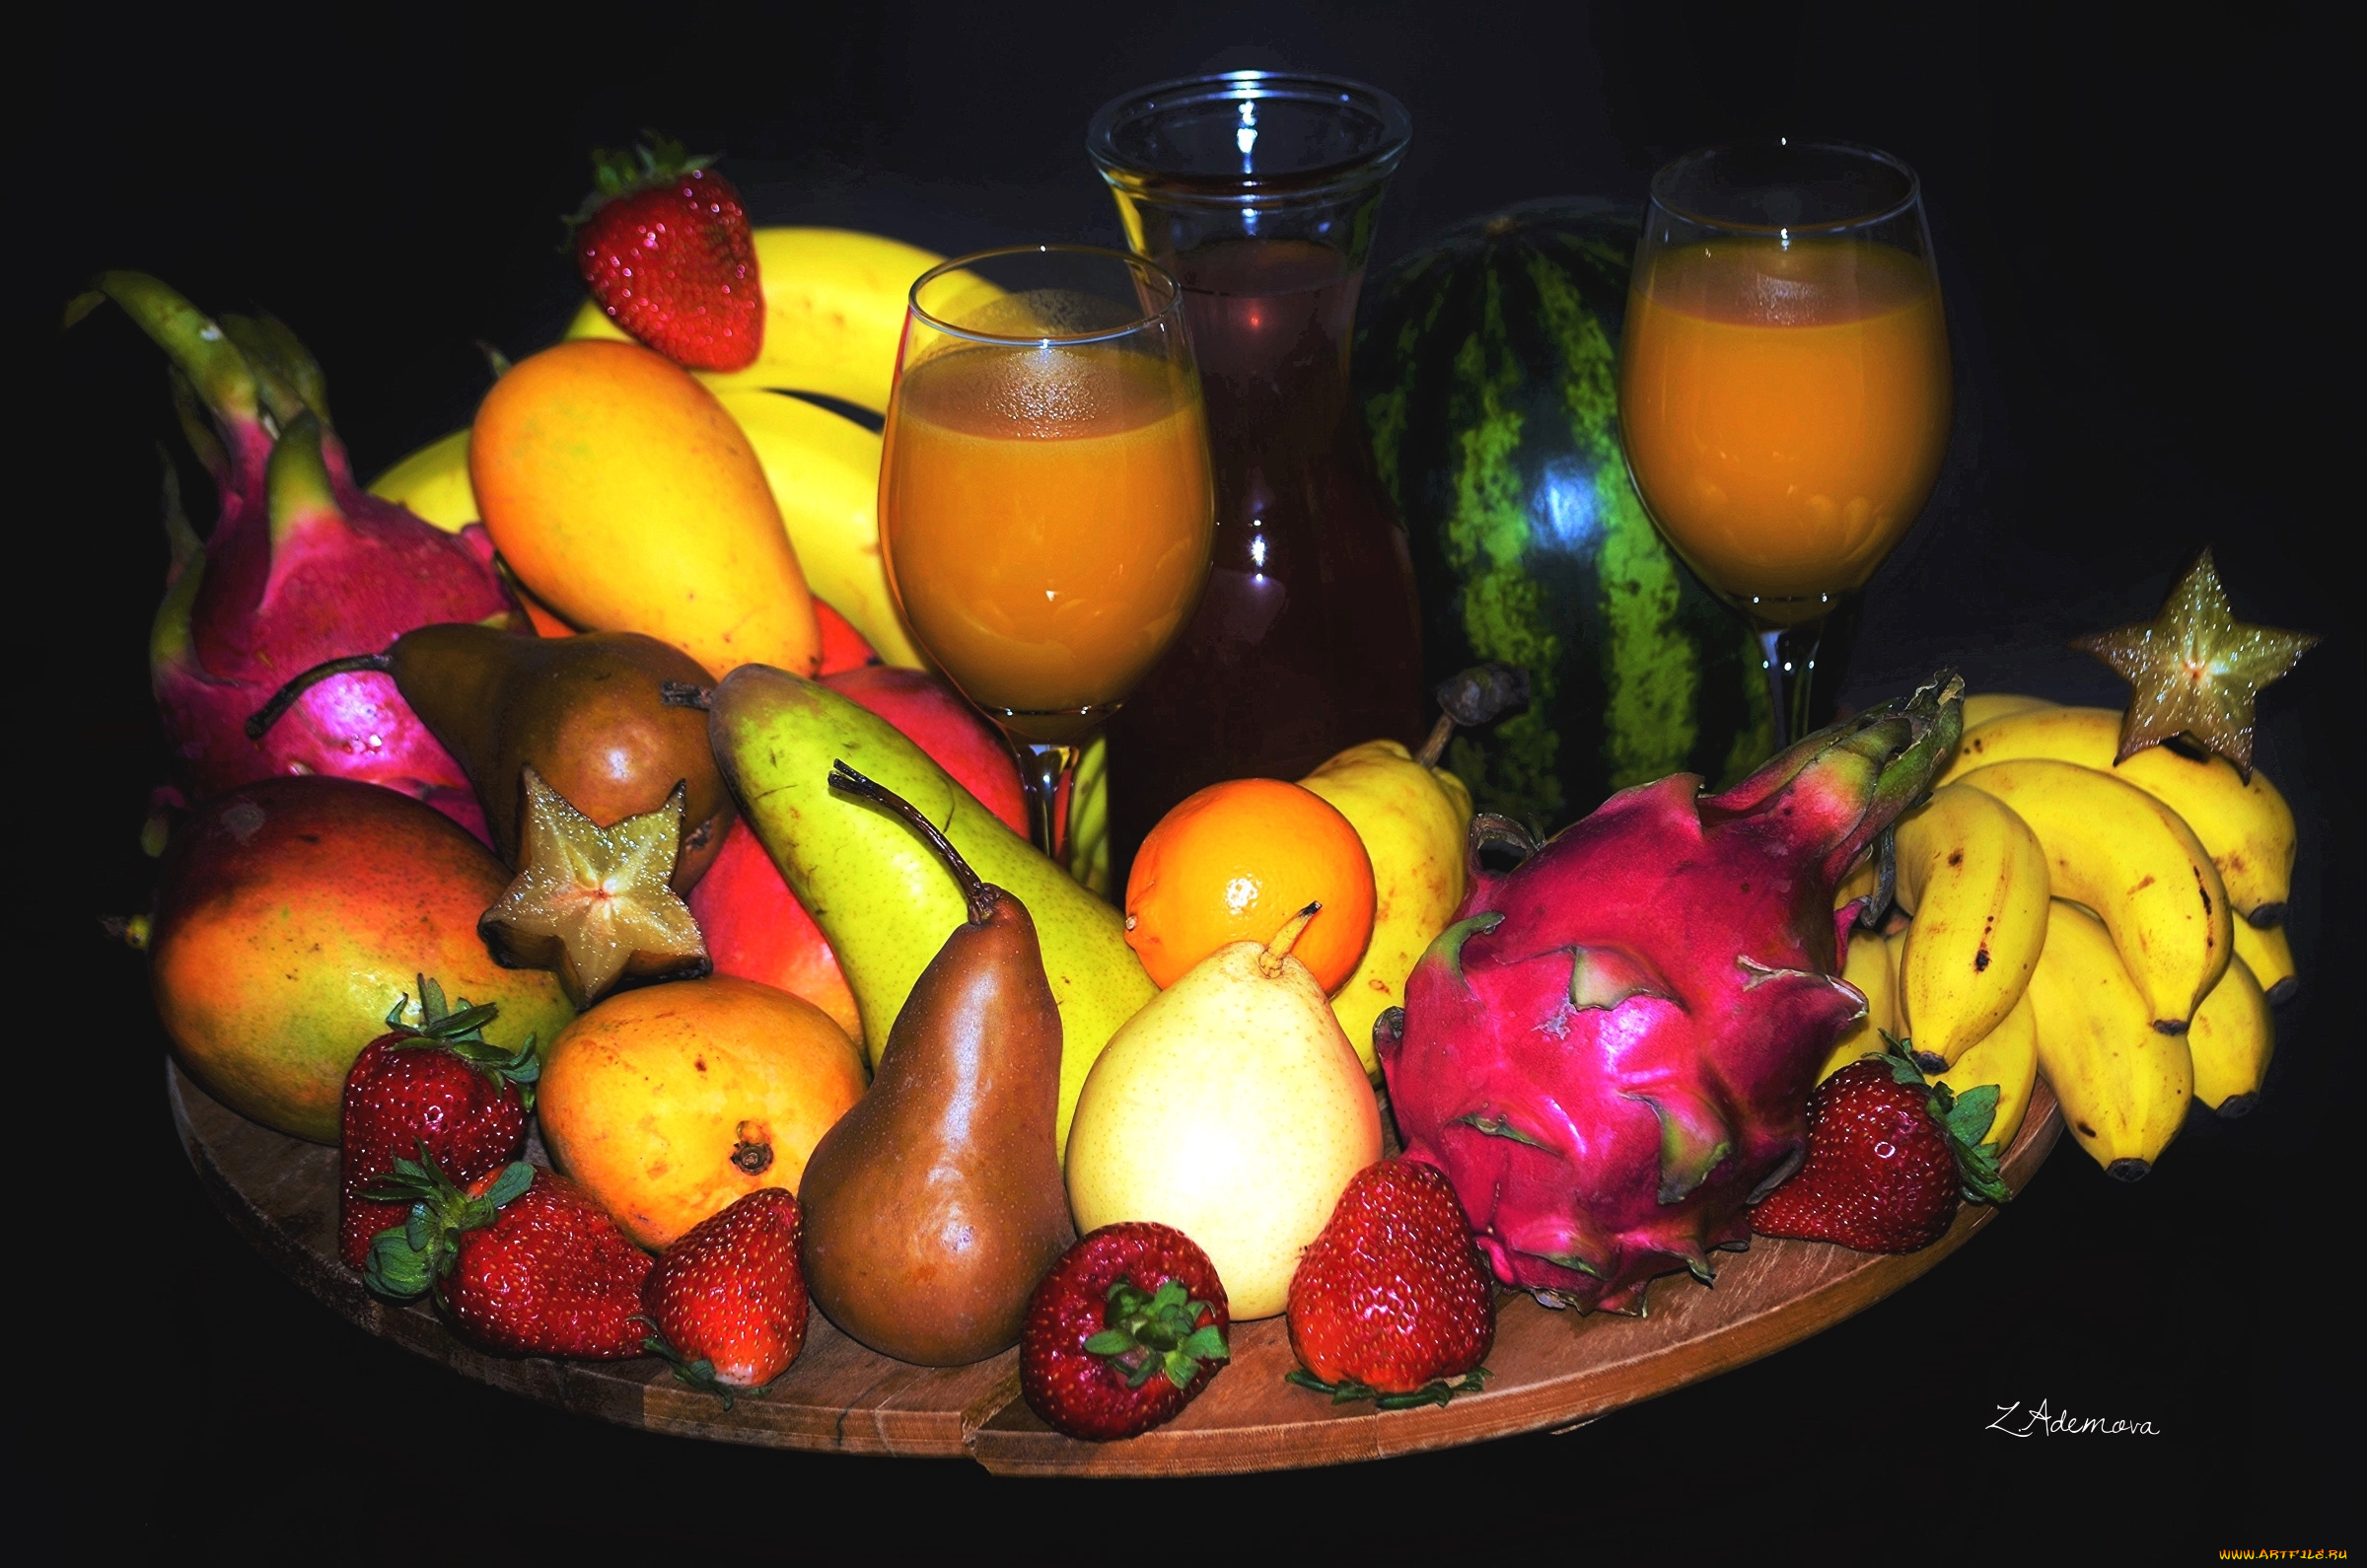 еда, фрукты, , ягоды, ягоды, арбуз, клубника, карамболь, сок, груша, банан, манго, питахайя